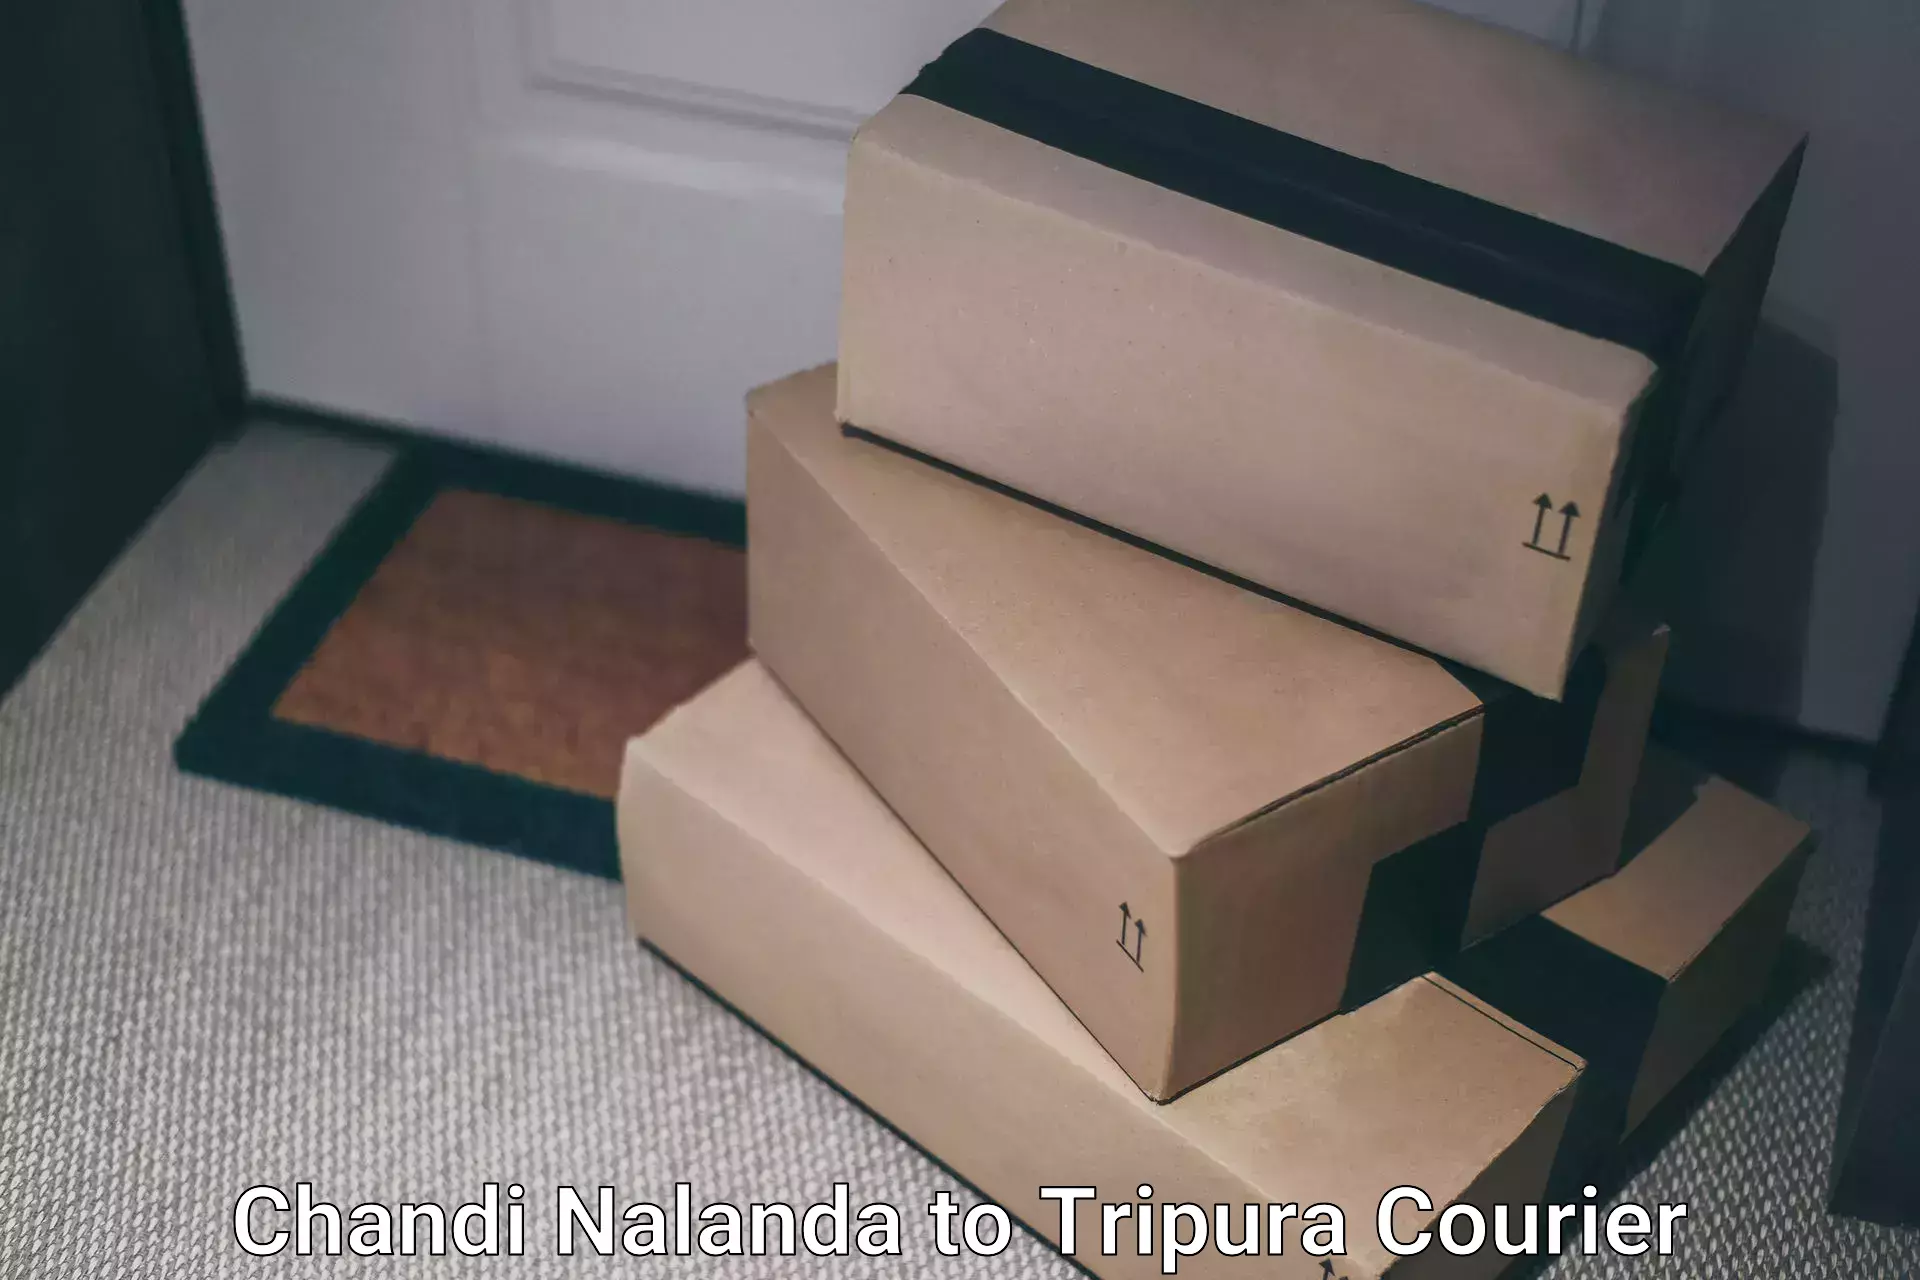 Holiday shipping services Chandi Nalanda to Manughat